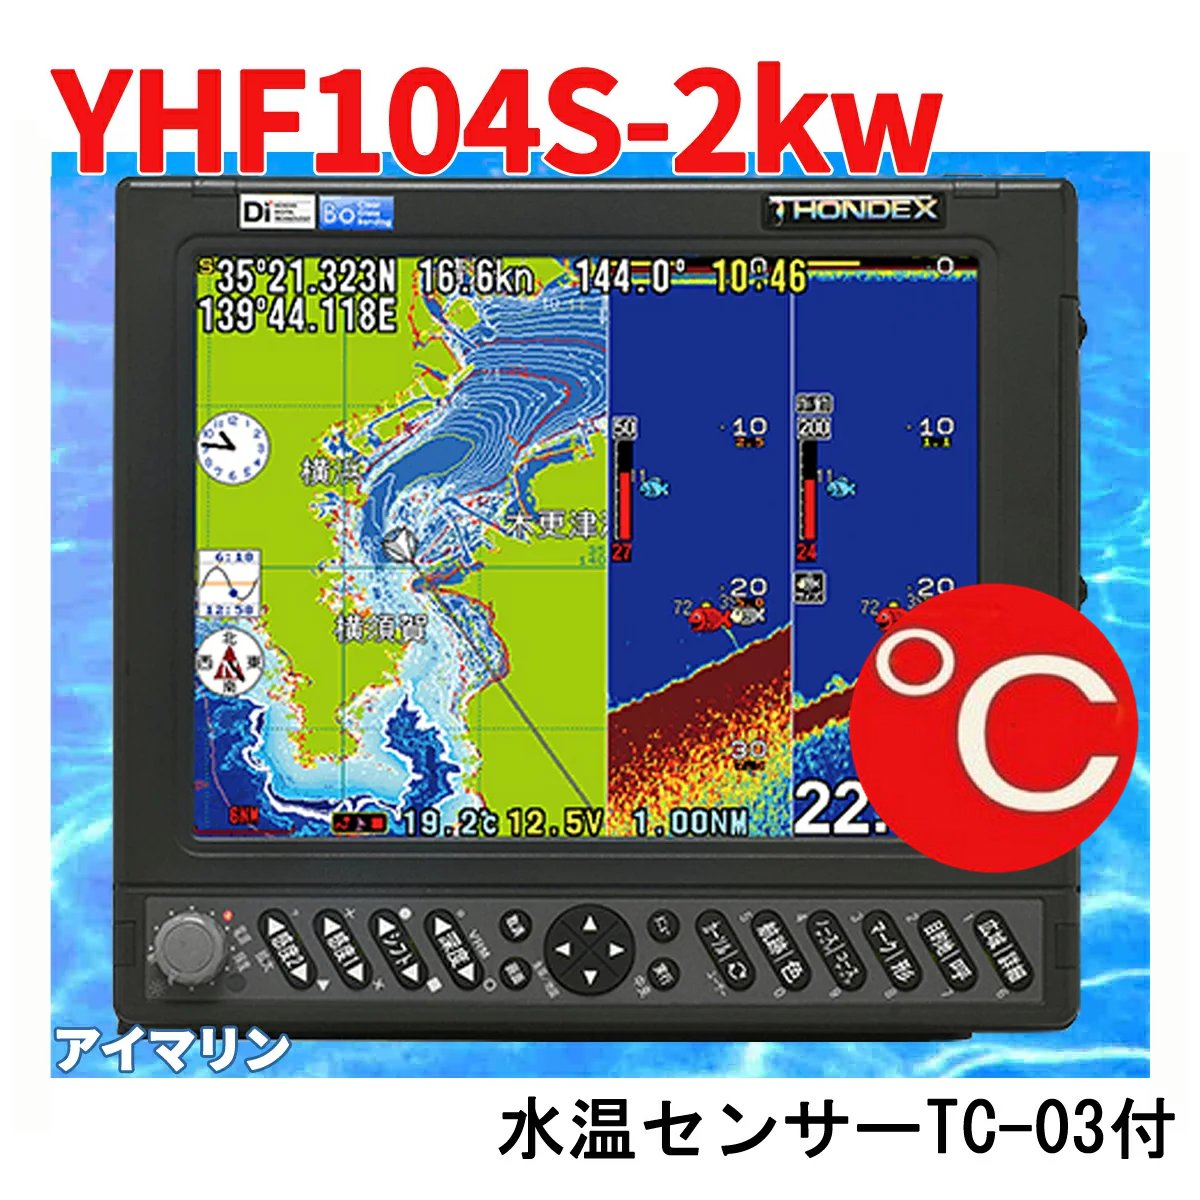 6/1 在庫あり TC03水温センサー付 YFHII-104S-FADi 2kw TD68振動子付き HE-731Sのヤマハ版 魚群探知機 YFH2-104-FADi 2箇所用端子あり GPS魚探